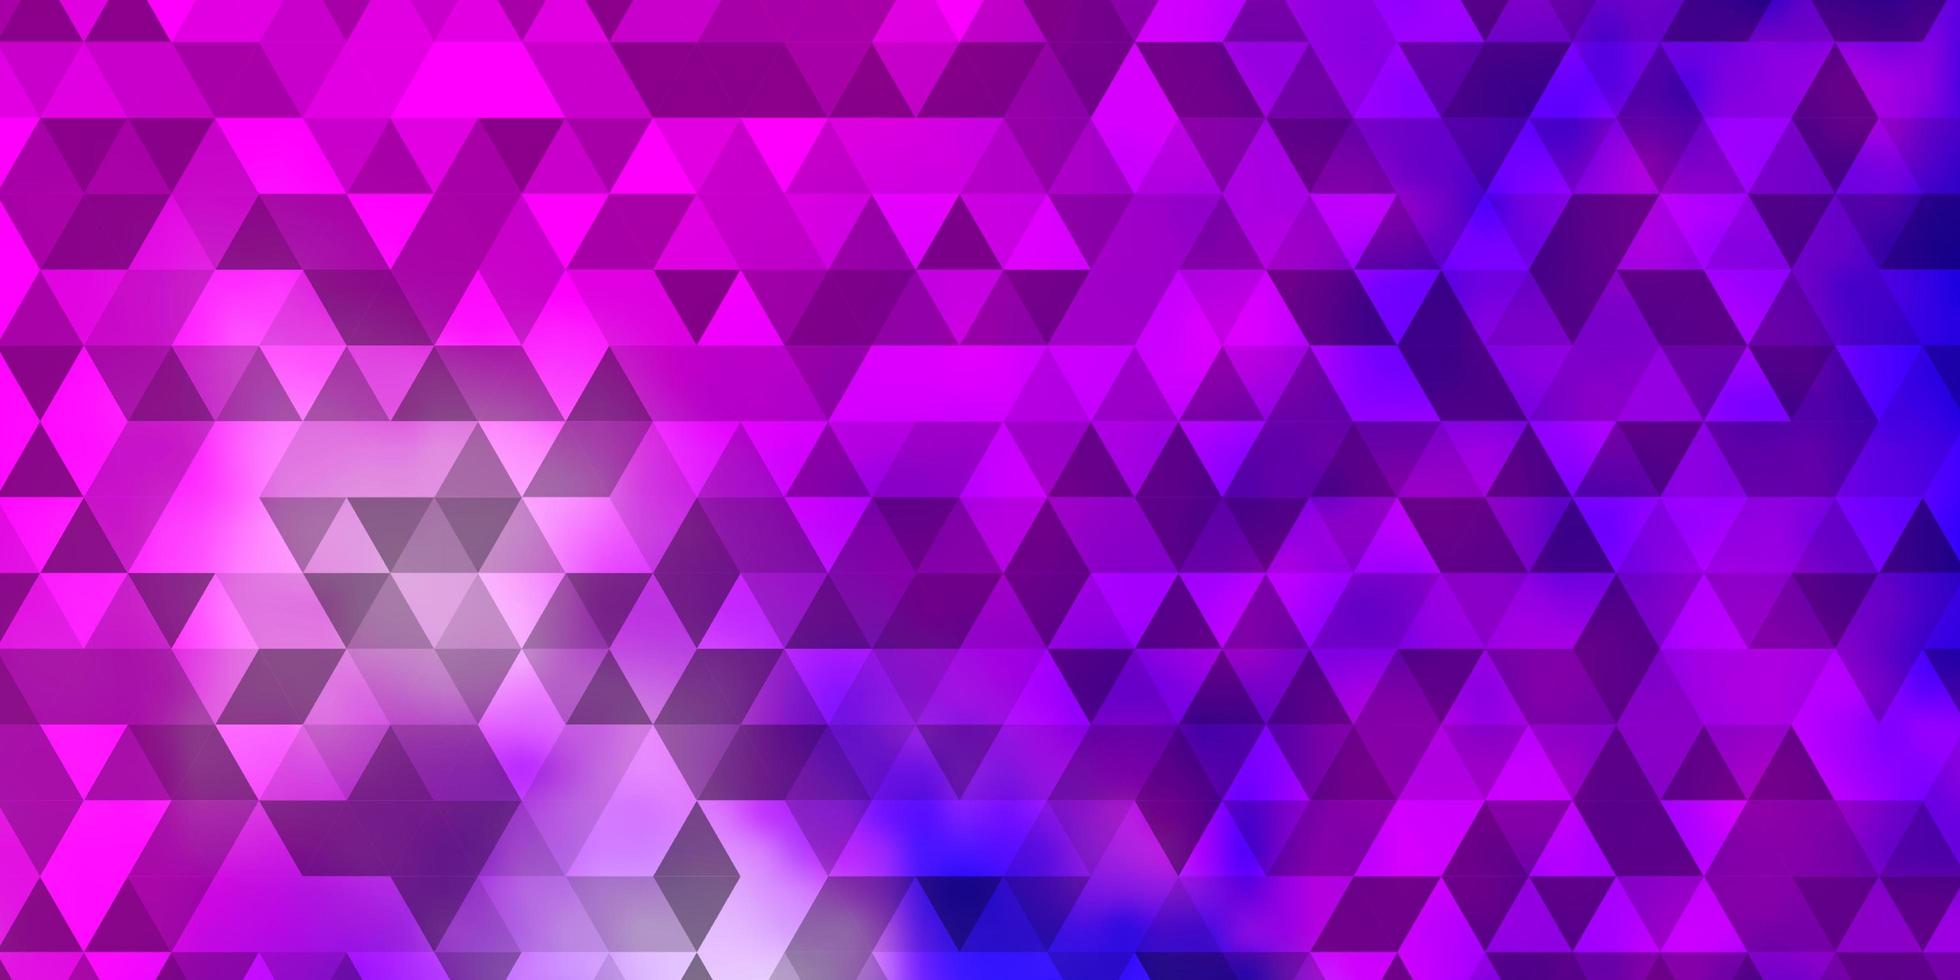 padrão de vetor rosa claro com estilo poligonal